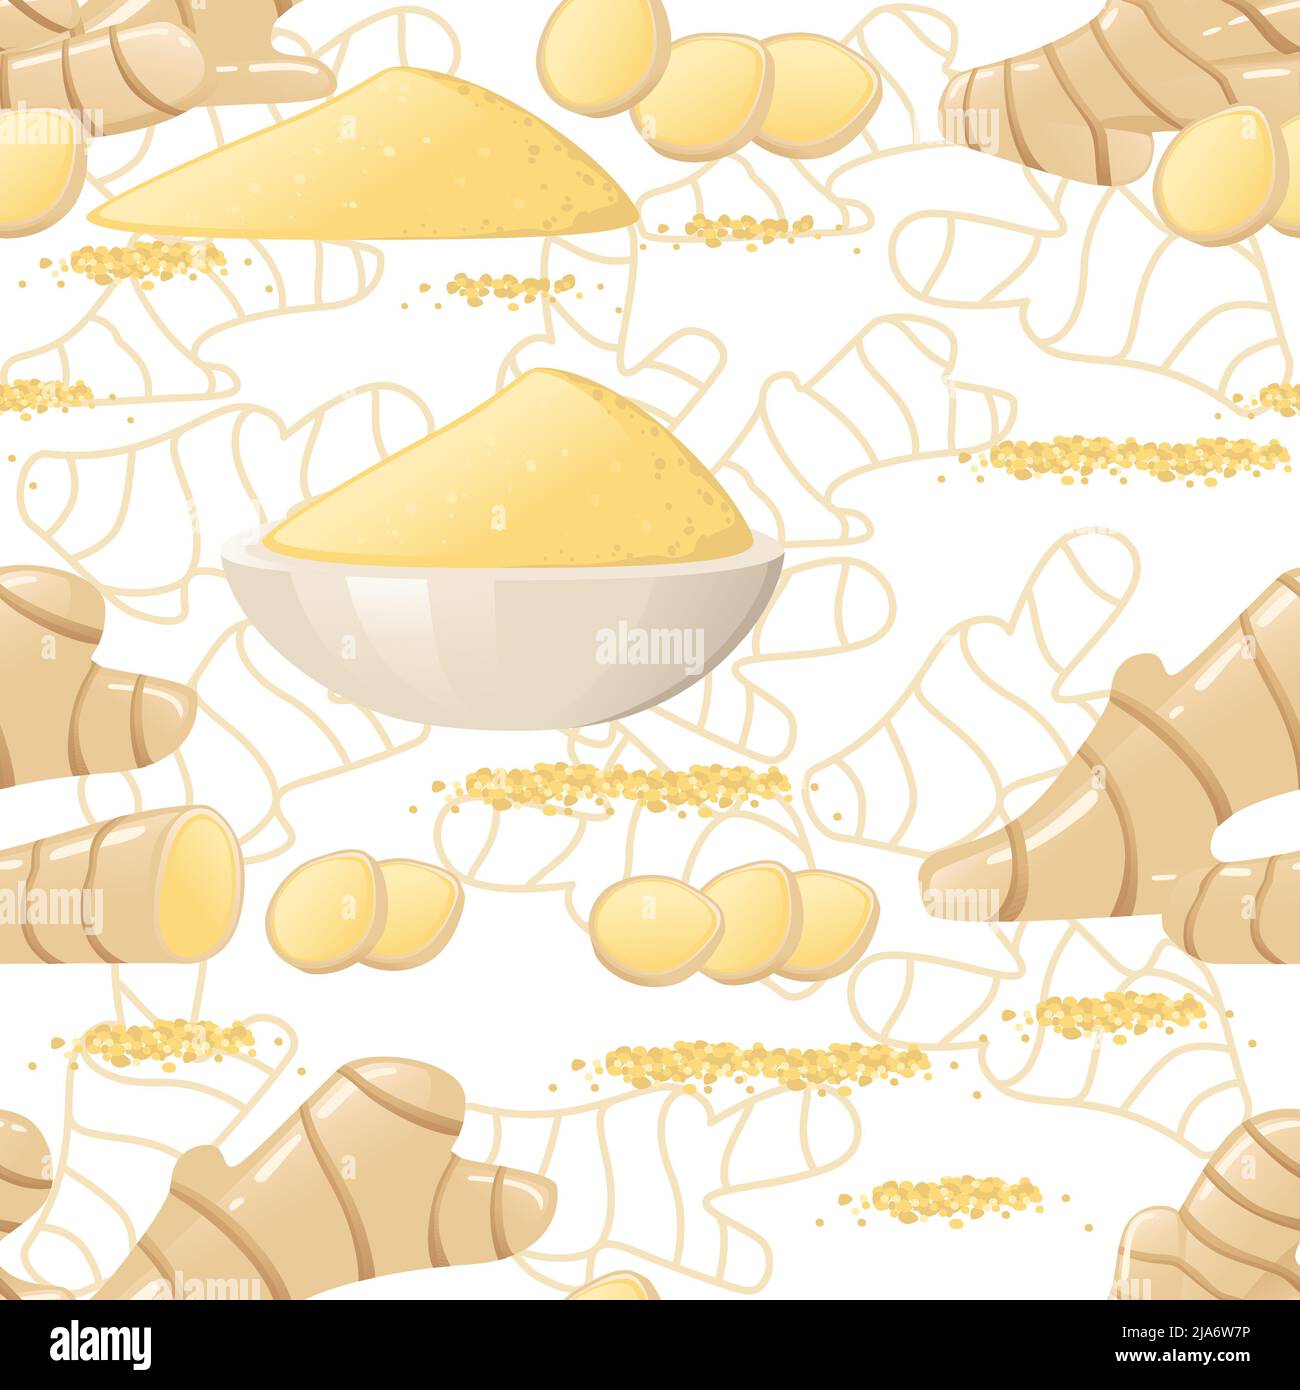 Nahtloses Muster der Ingwer-Würze mit Ganzpulver und gemahlener Ingwer-Vektor-Illustration Stock Vektor